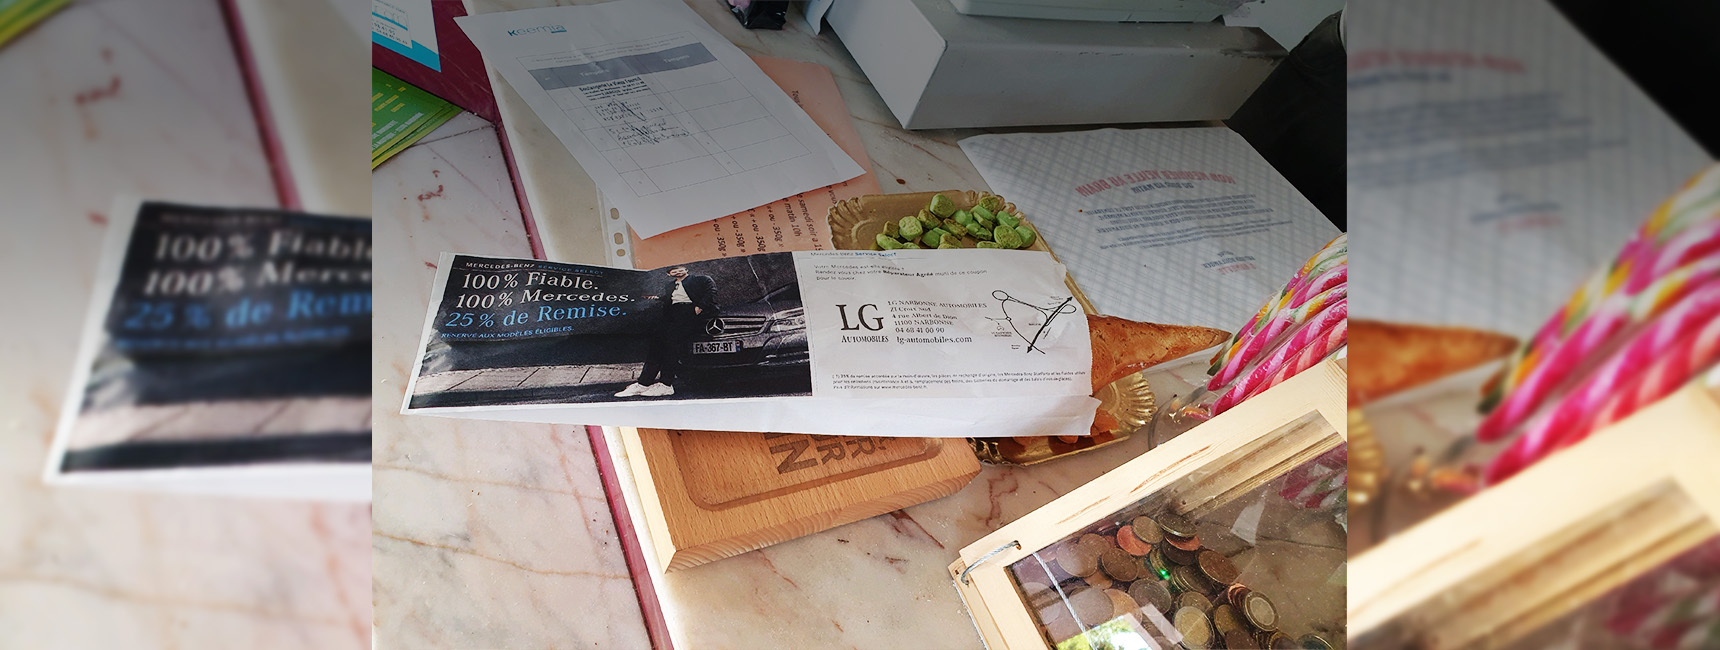 Mercedes Benz LG automobiles - Keemia Toulouse agence de marketing locale en région Occitanie